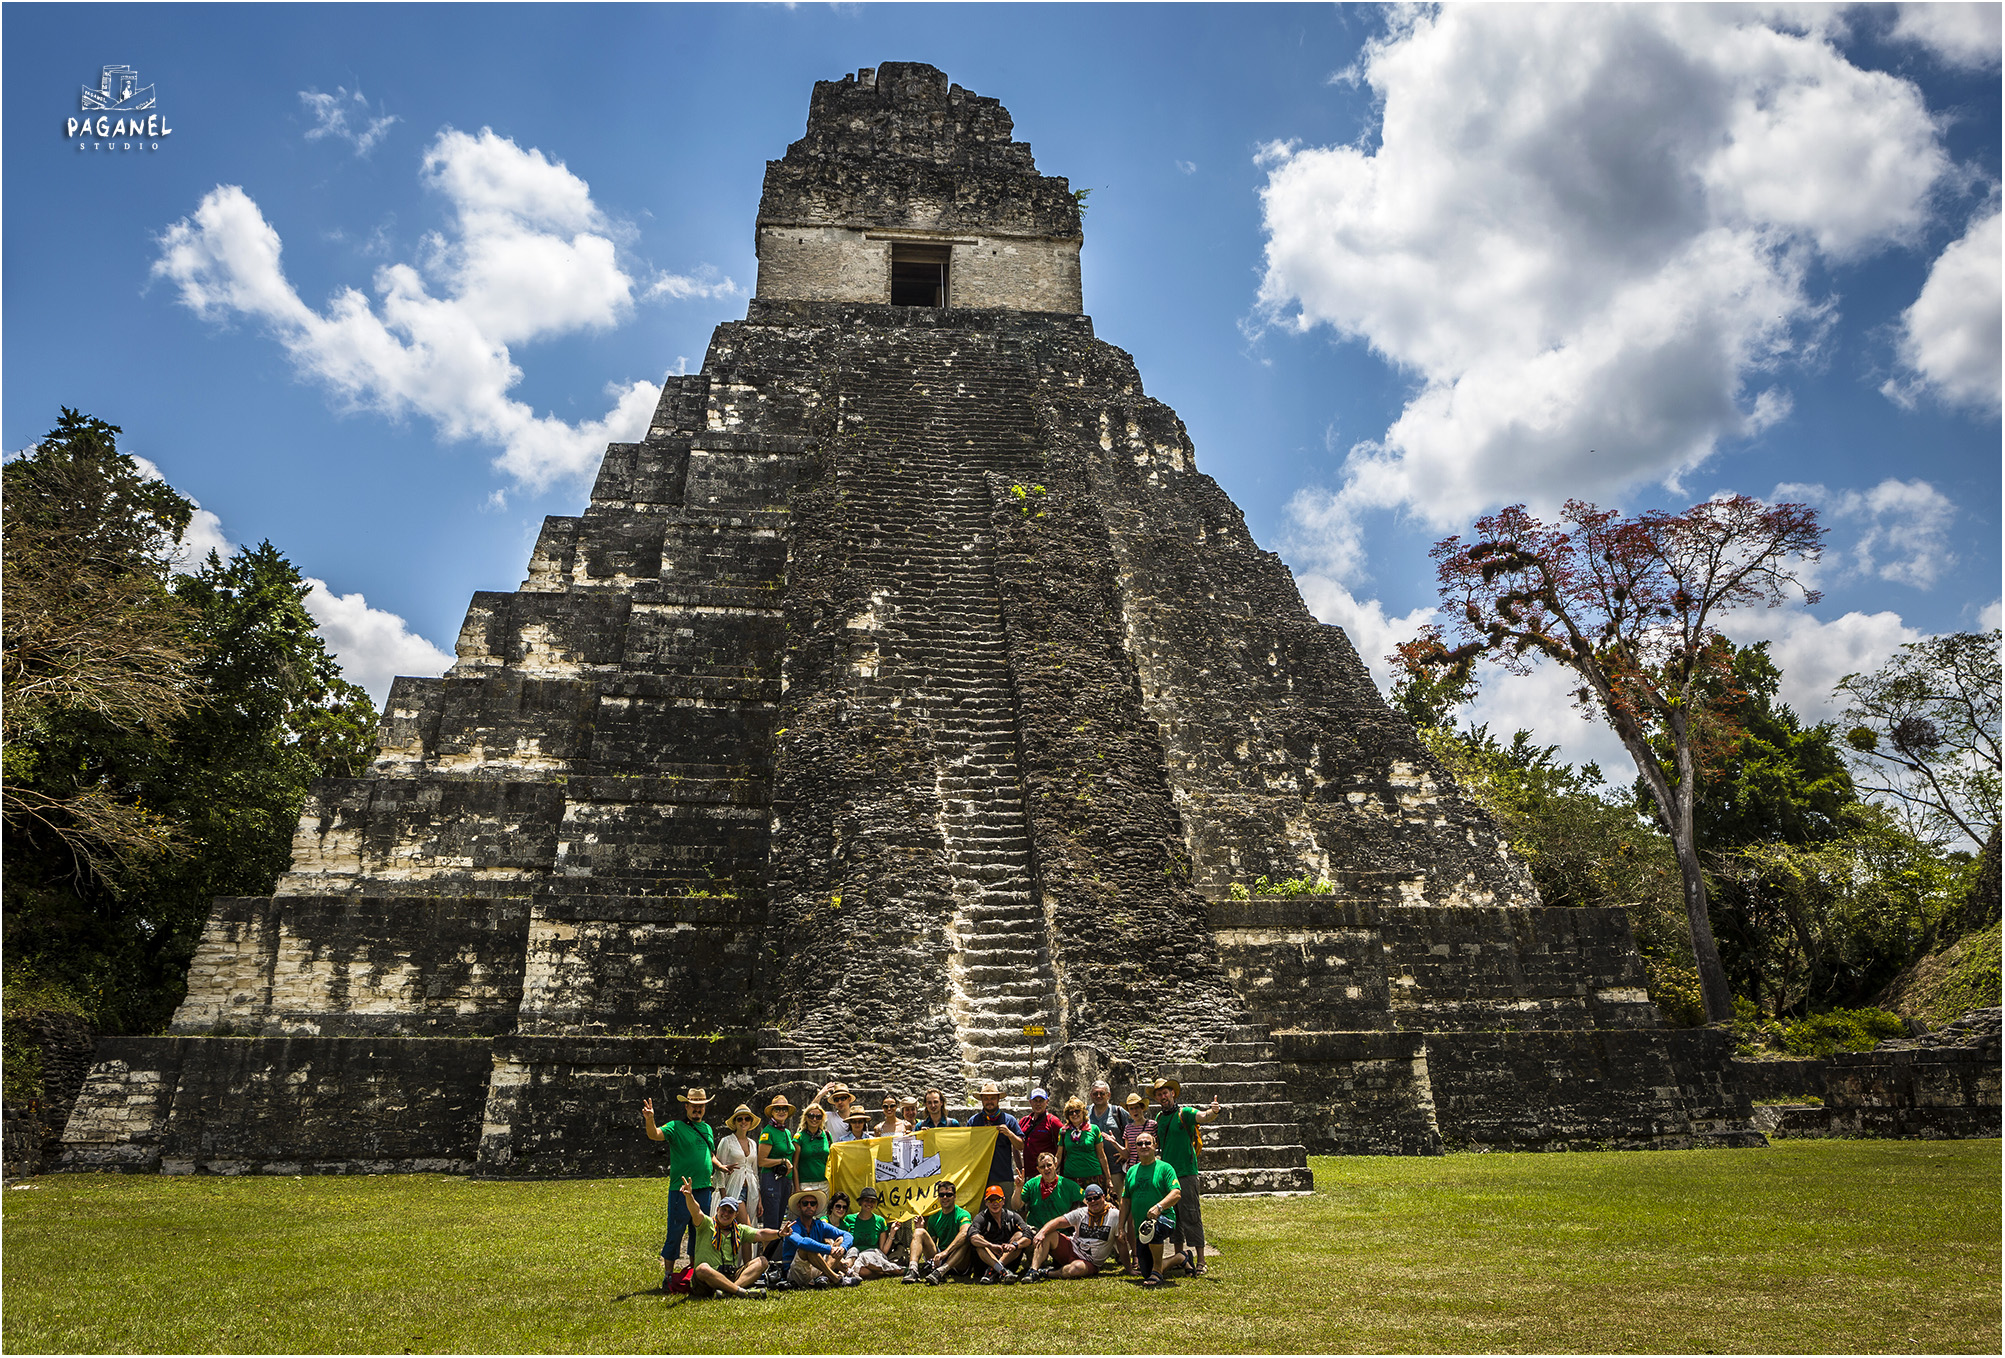 Храм I — майяский пирамидальный храм, расположенный в древней столице Мутульского царства Тикале на территории современной Гватемалы